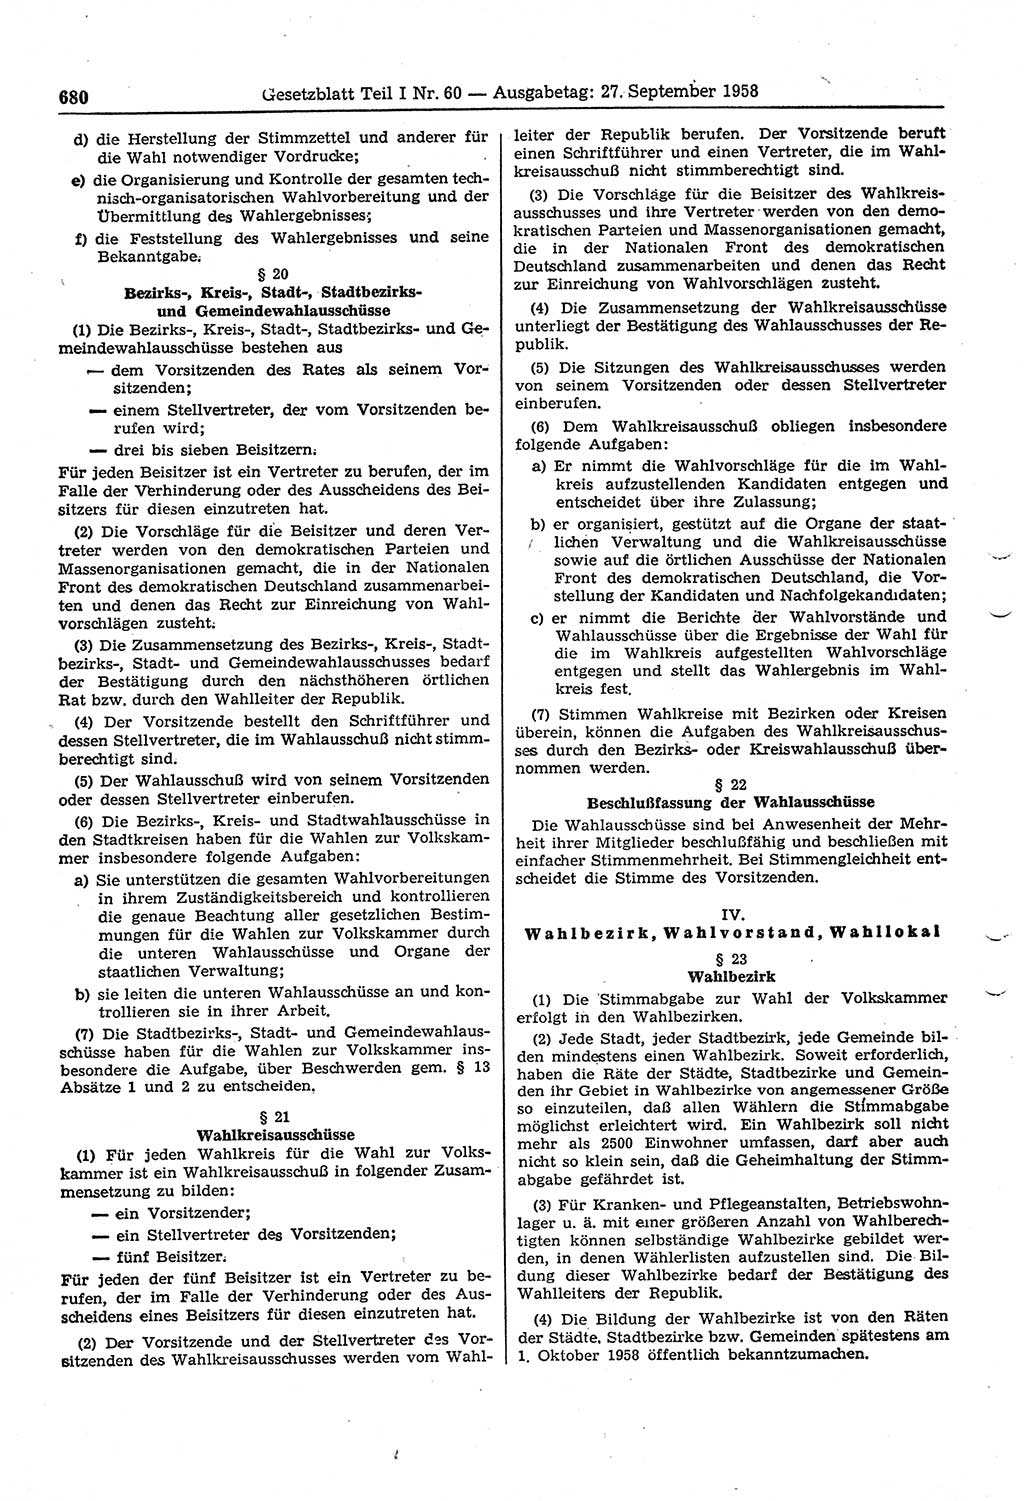 Gesetzblatt (GBl.) der Deutschen Demokratischen Republik (DDR) Teil Ⅰ 1958, Seite 680 (GBl. DDR Ⅰ 1958, S. 680)